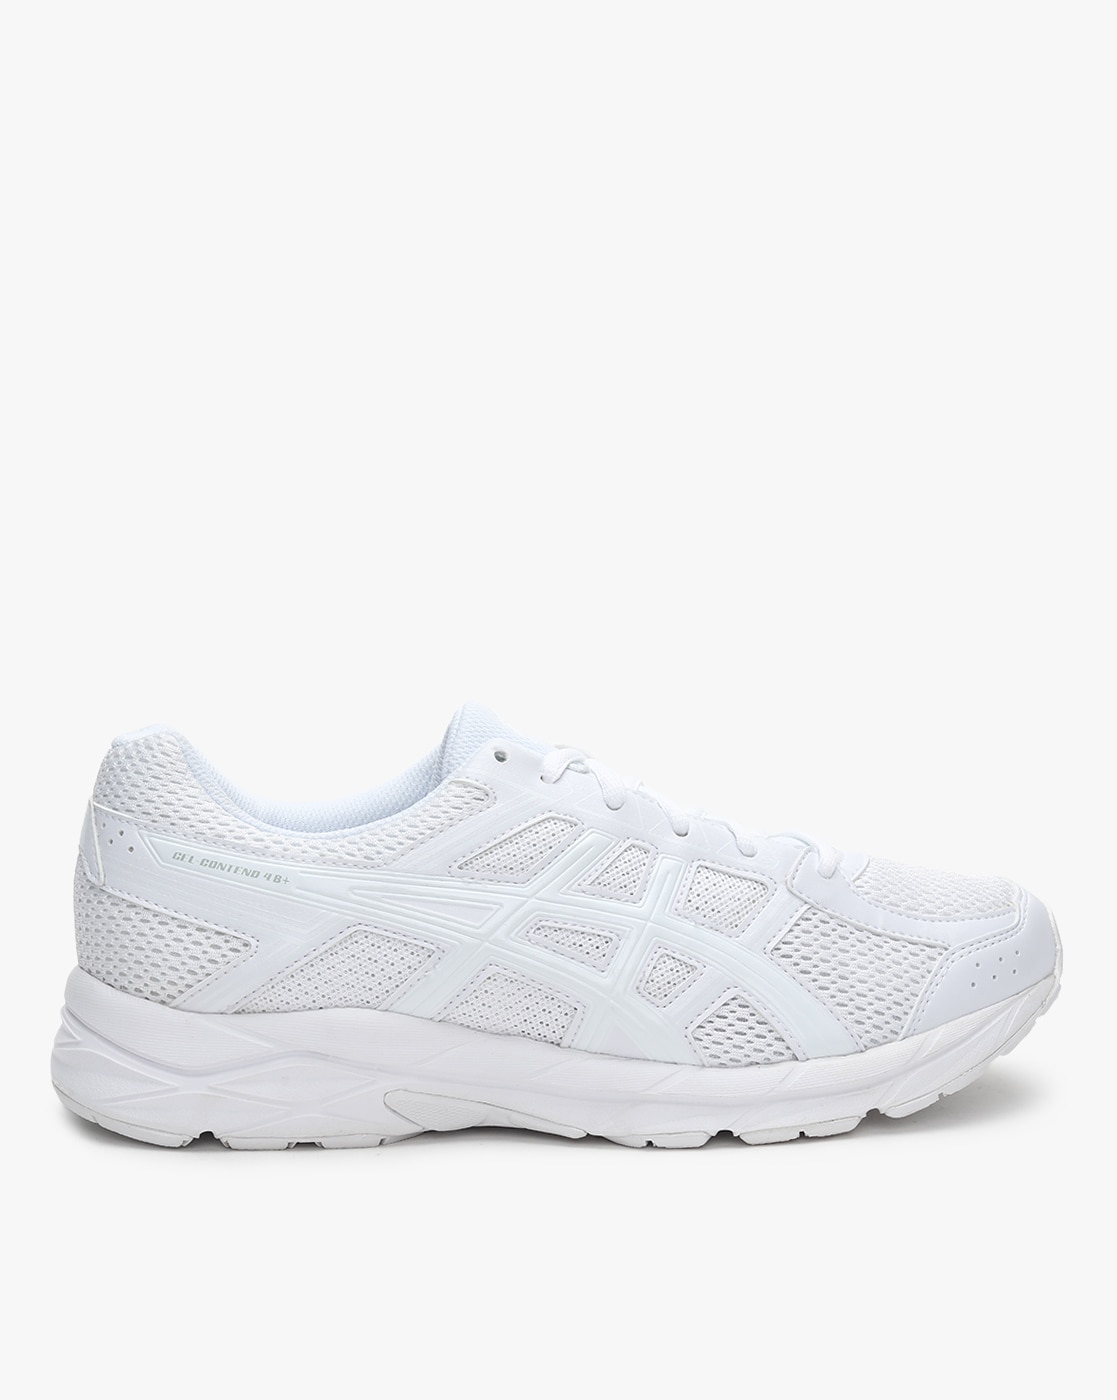 asics white running shoes